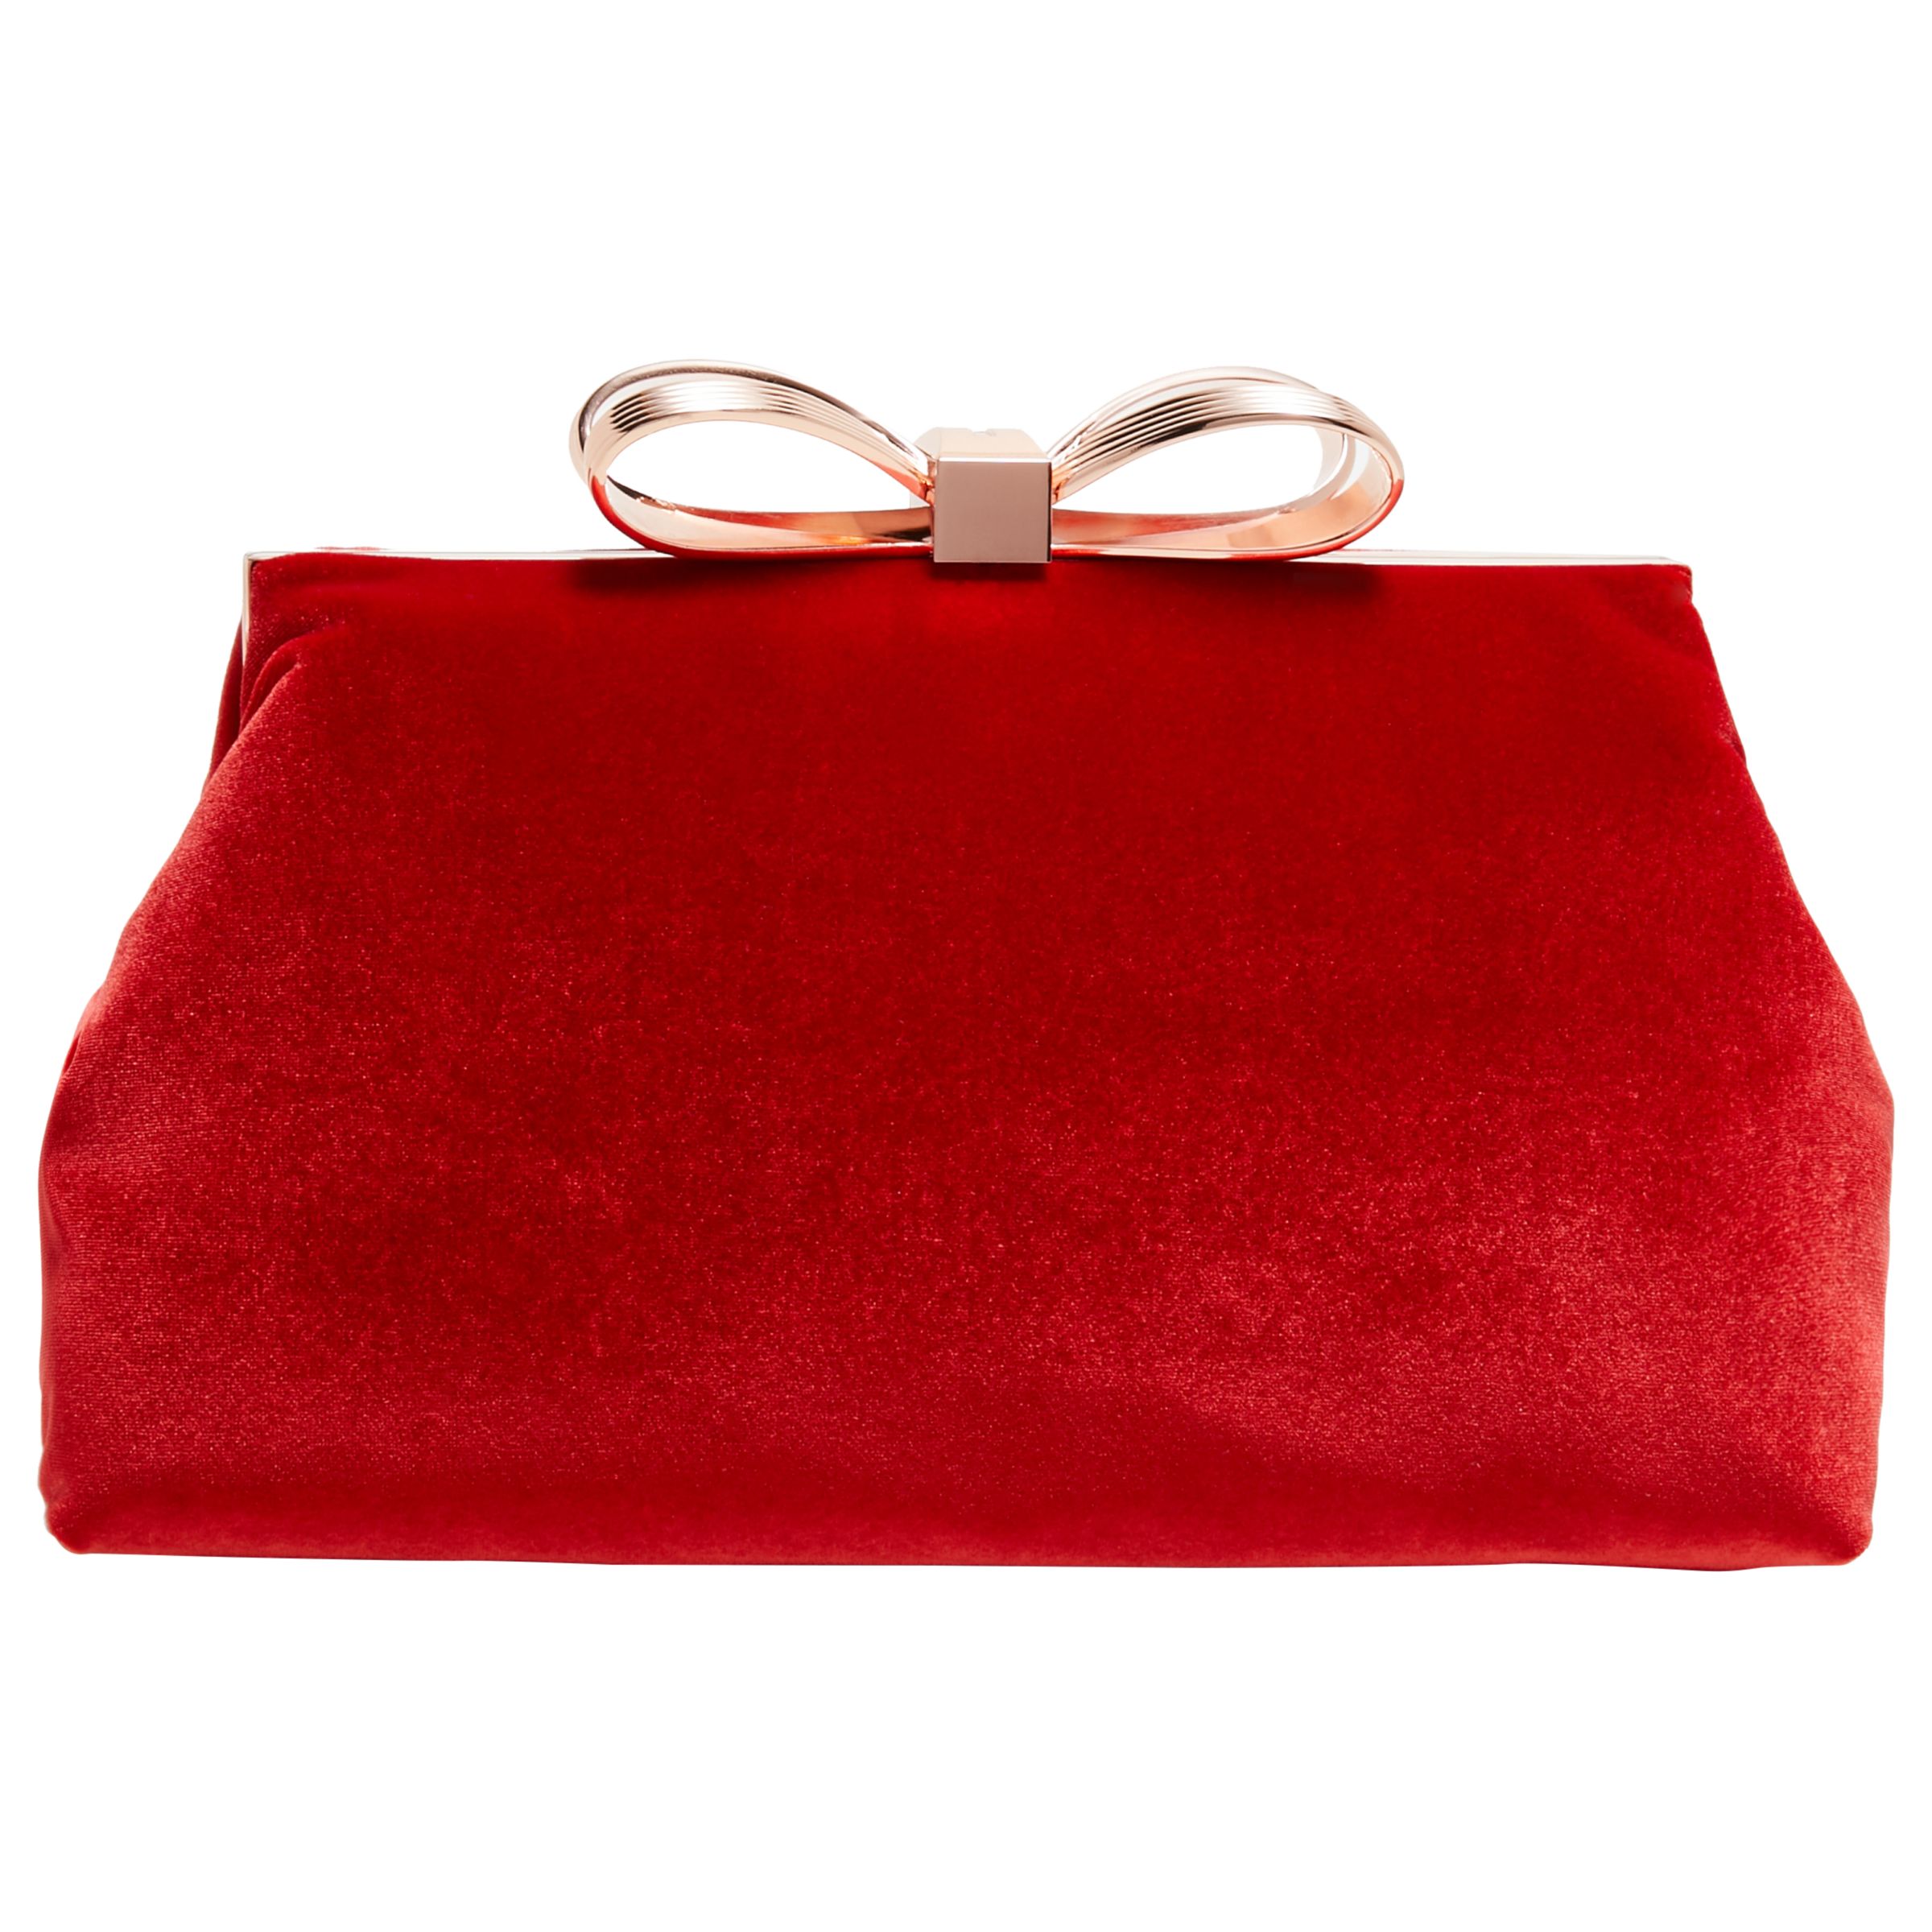 bright red clutch bag